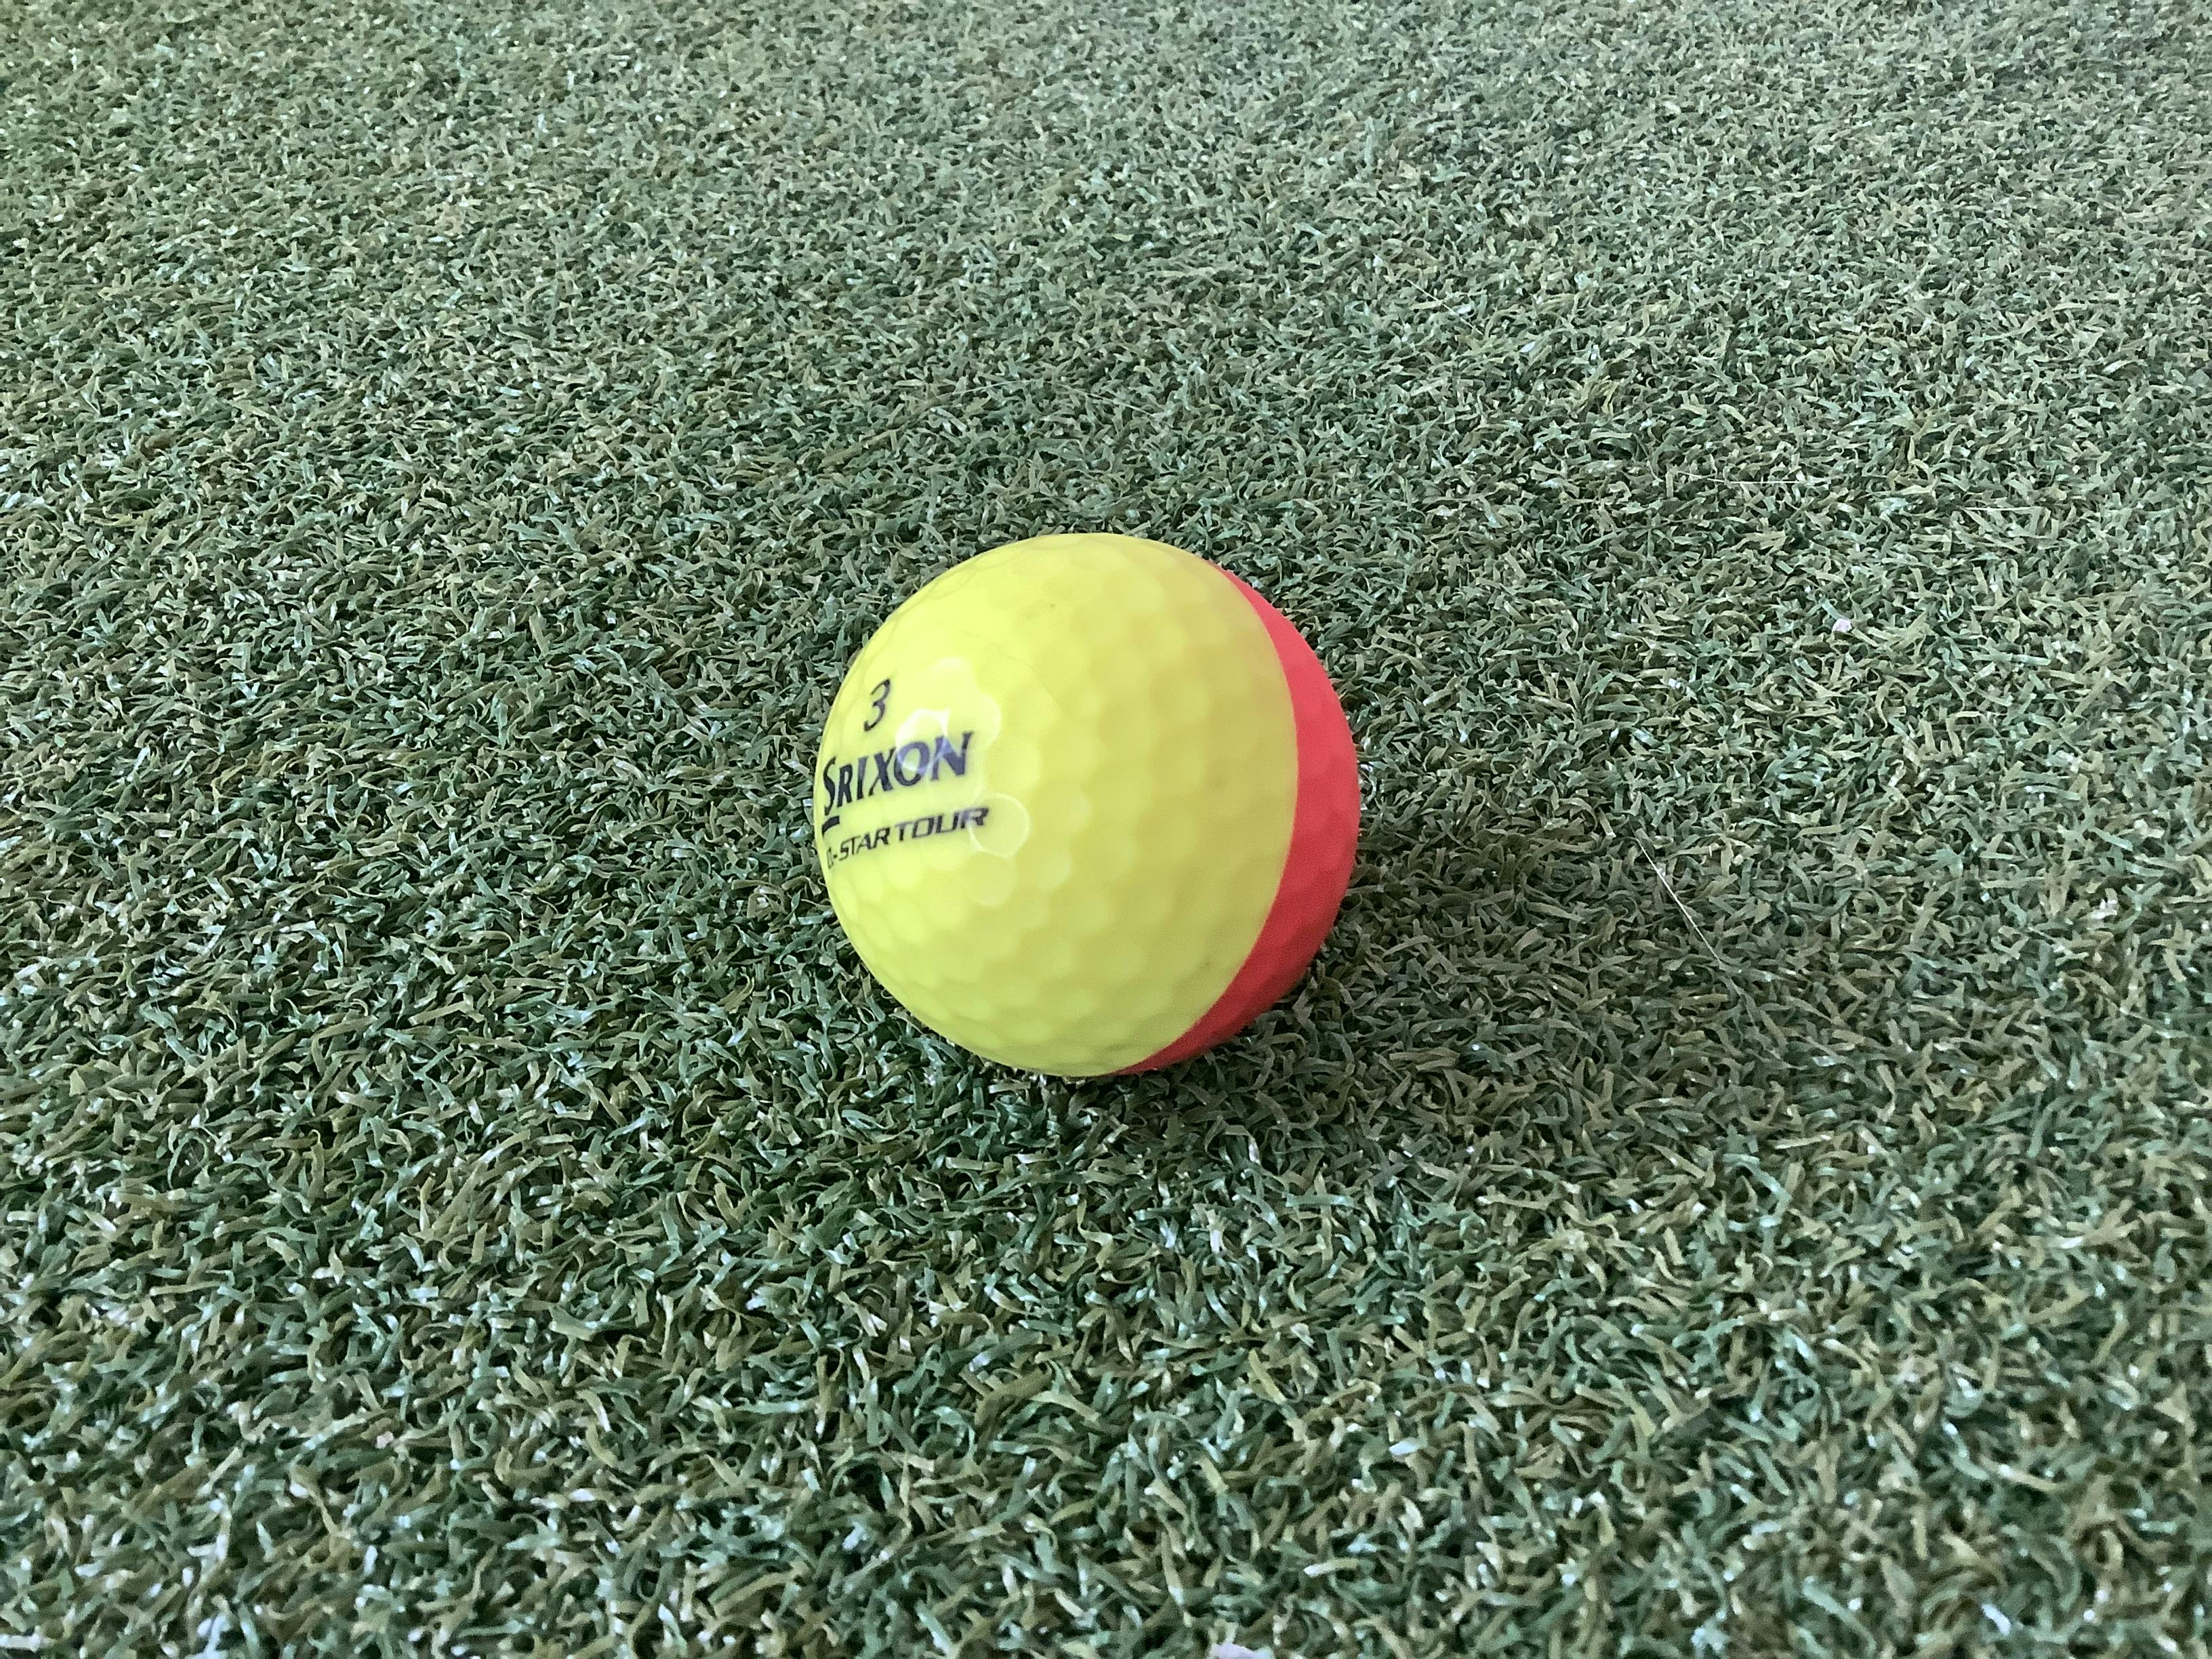 Review: Srixon Q Star Tour Divide Golf Balls 1 Dozen - Brite Red